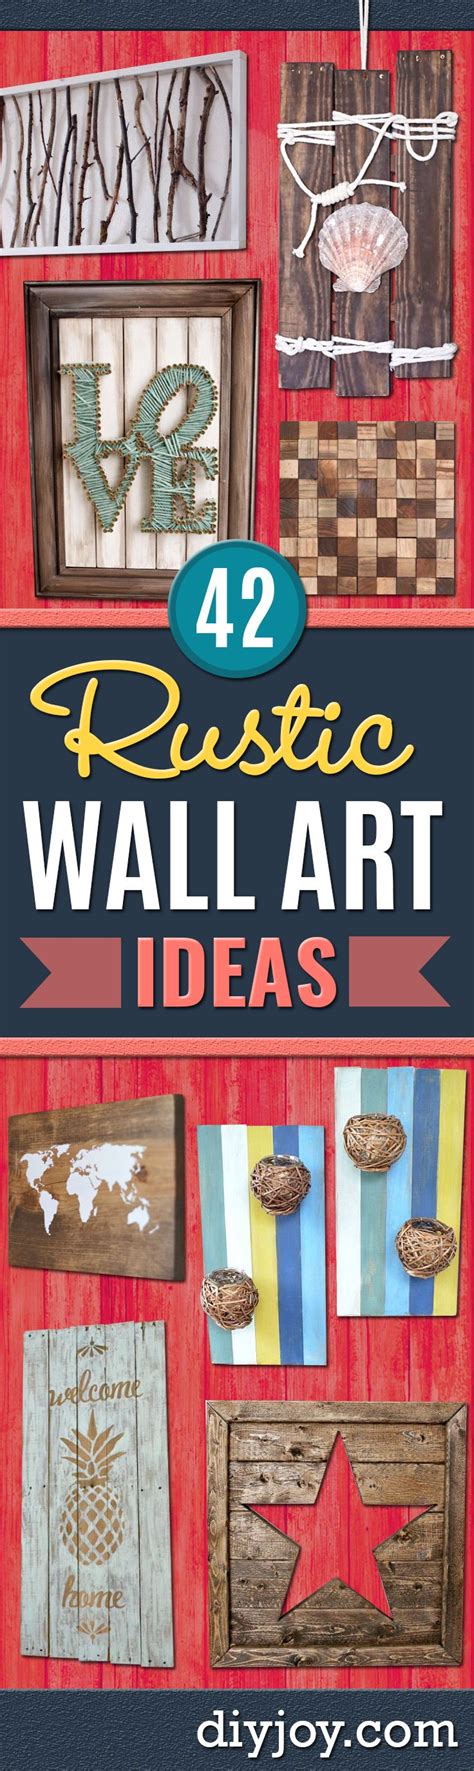 42 Rustic Diy Wall Art Ideas Homemade Wall Art Diy Wall Art Rustic